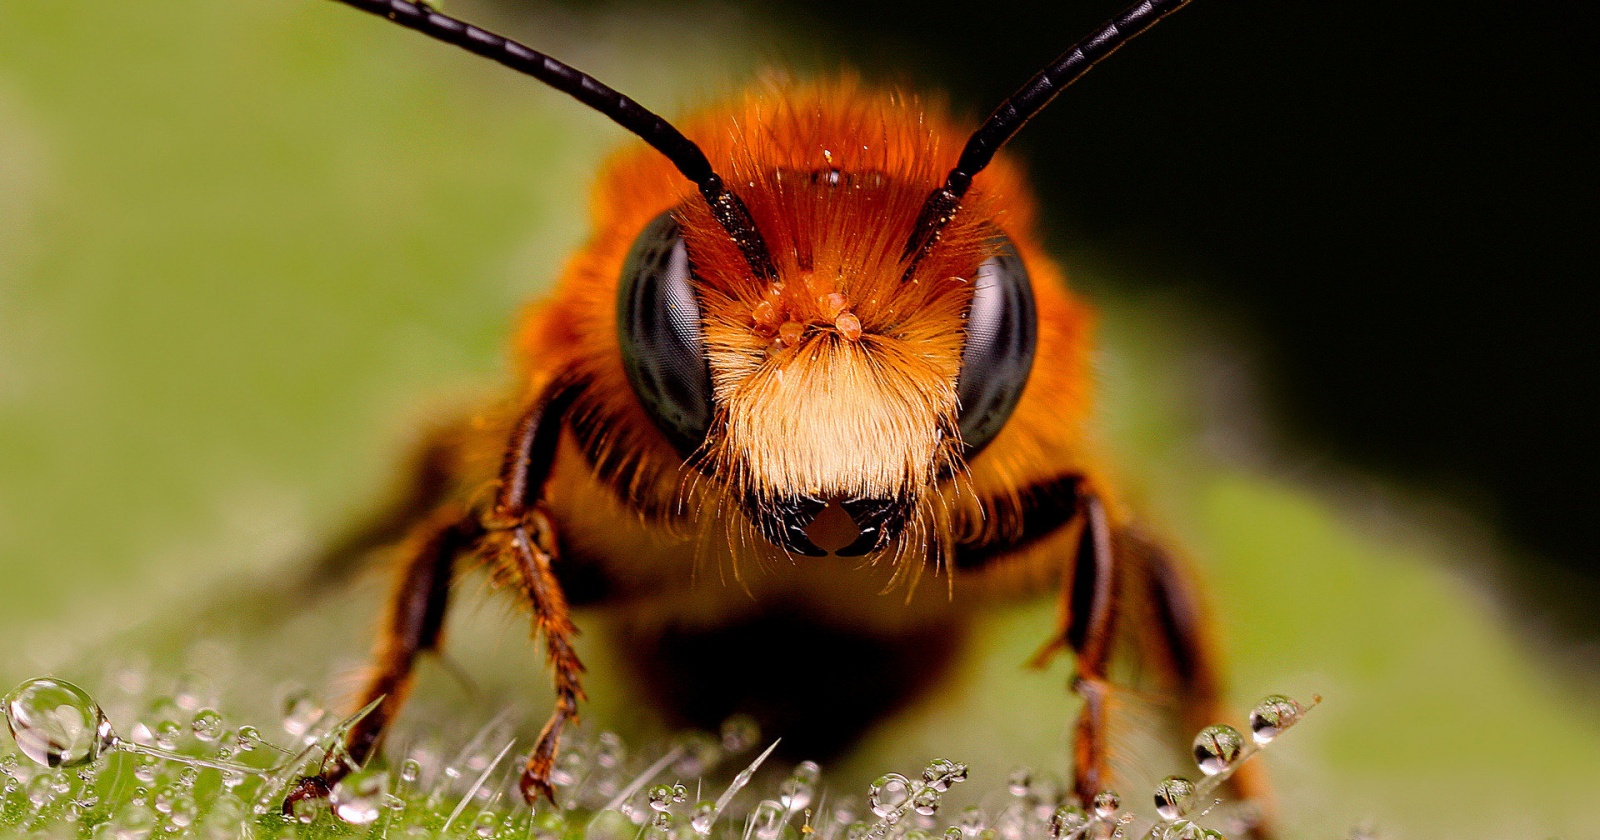 В бирманском янтаре найдена меловая пчела с триунгулинами